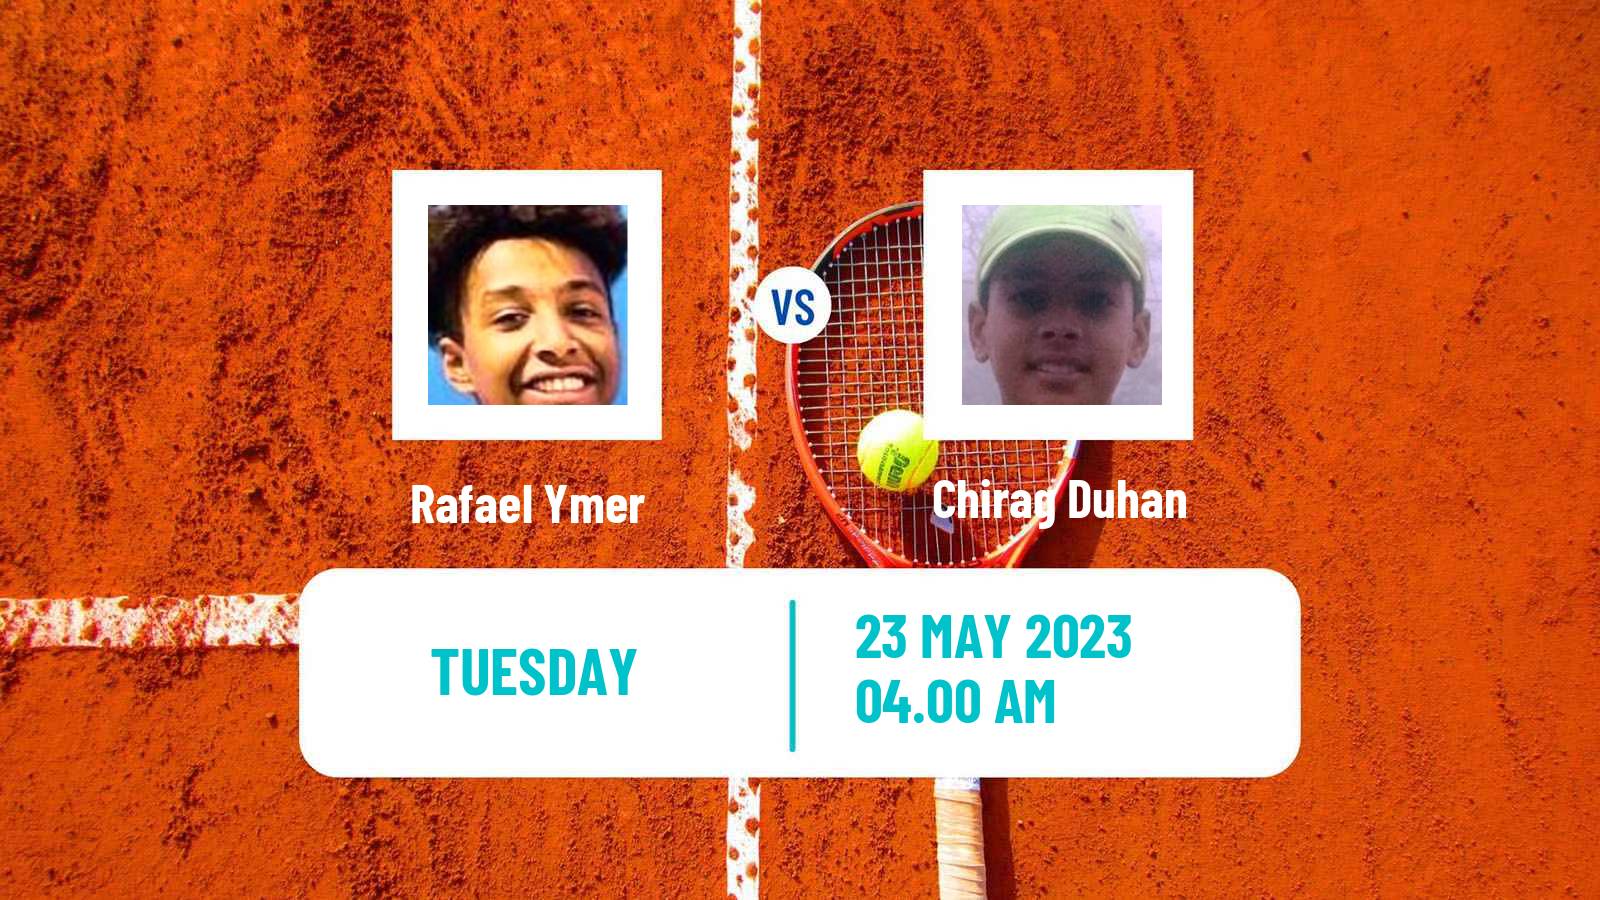 Tennis ITF M15 Addis Ababa 2 Men Rafael Ymer - Chirag Duhan